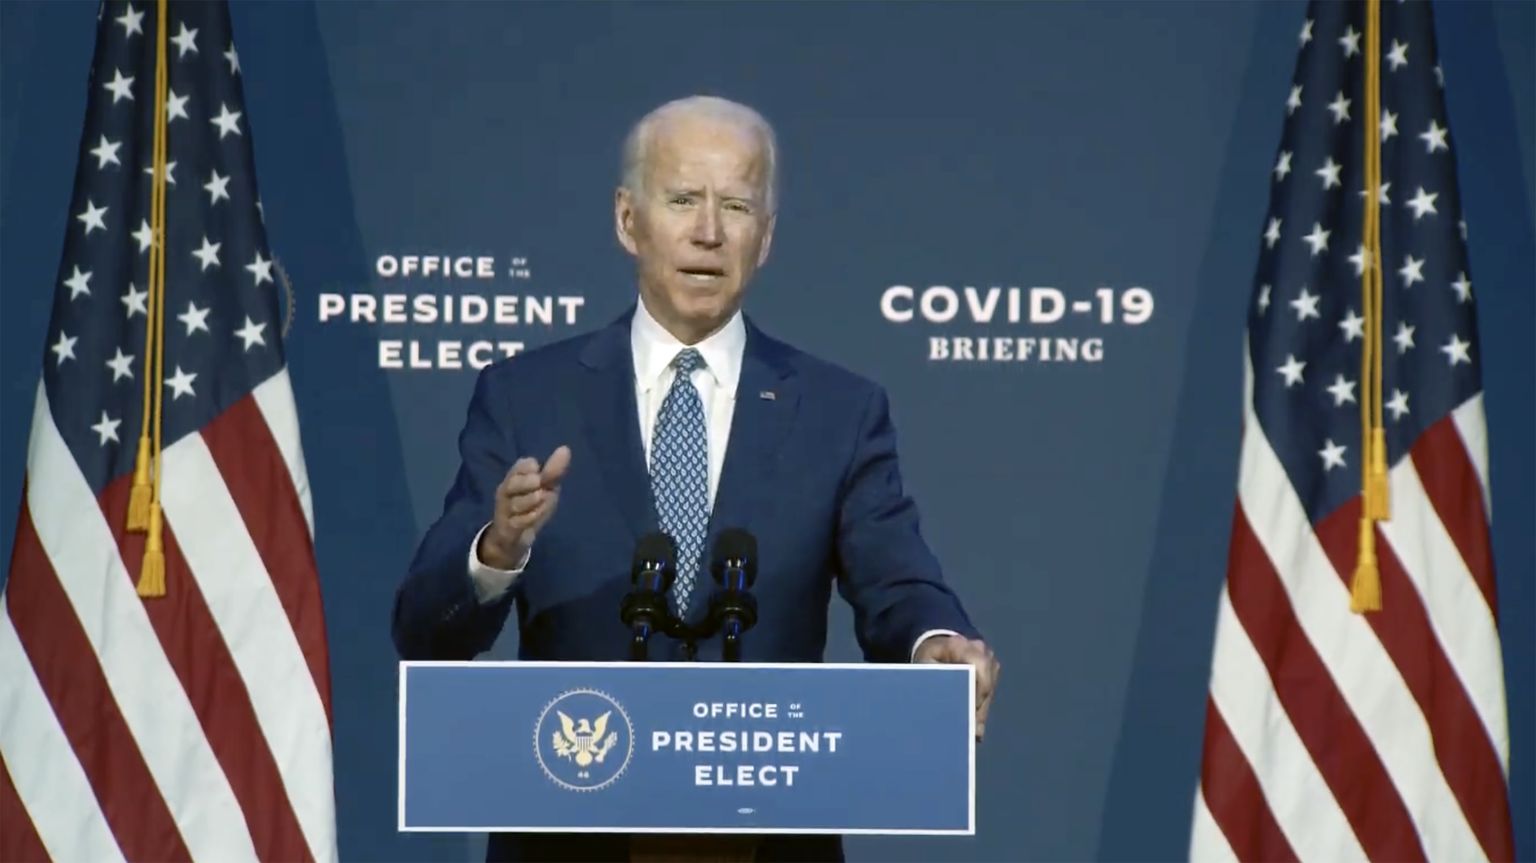 USA presidendivalimised võitnud demokraat Joe Biden esinemas 9. novembril 2020 Delaware'is Wilmingtonis, rääkides koroonaviirusega võitlemisest